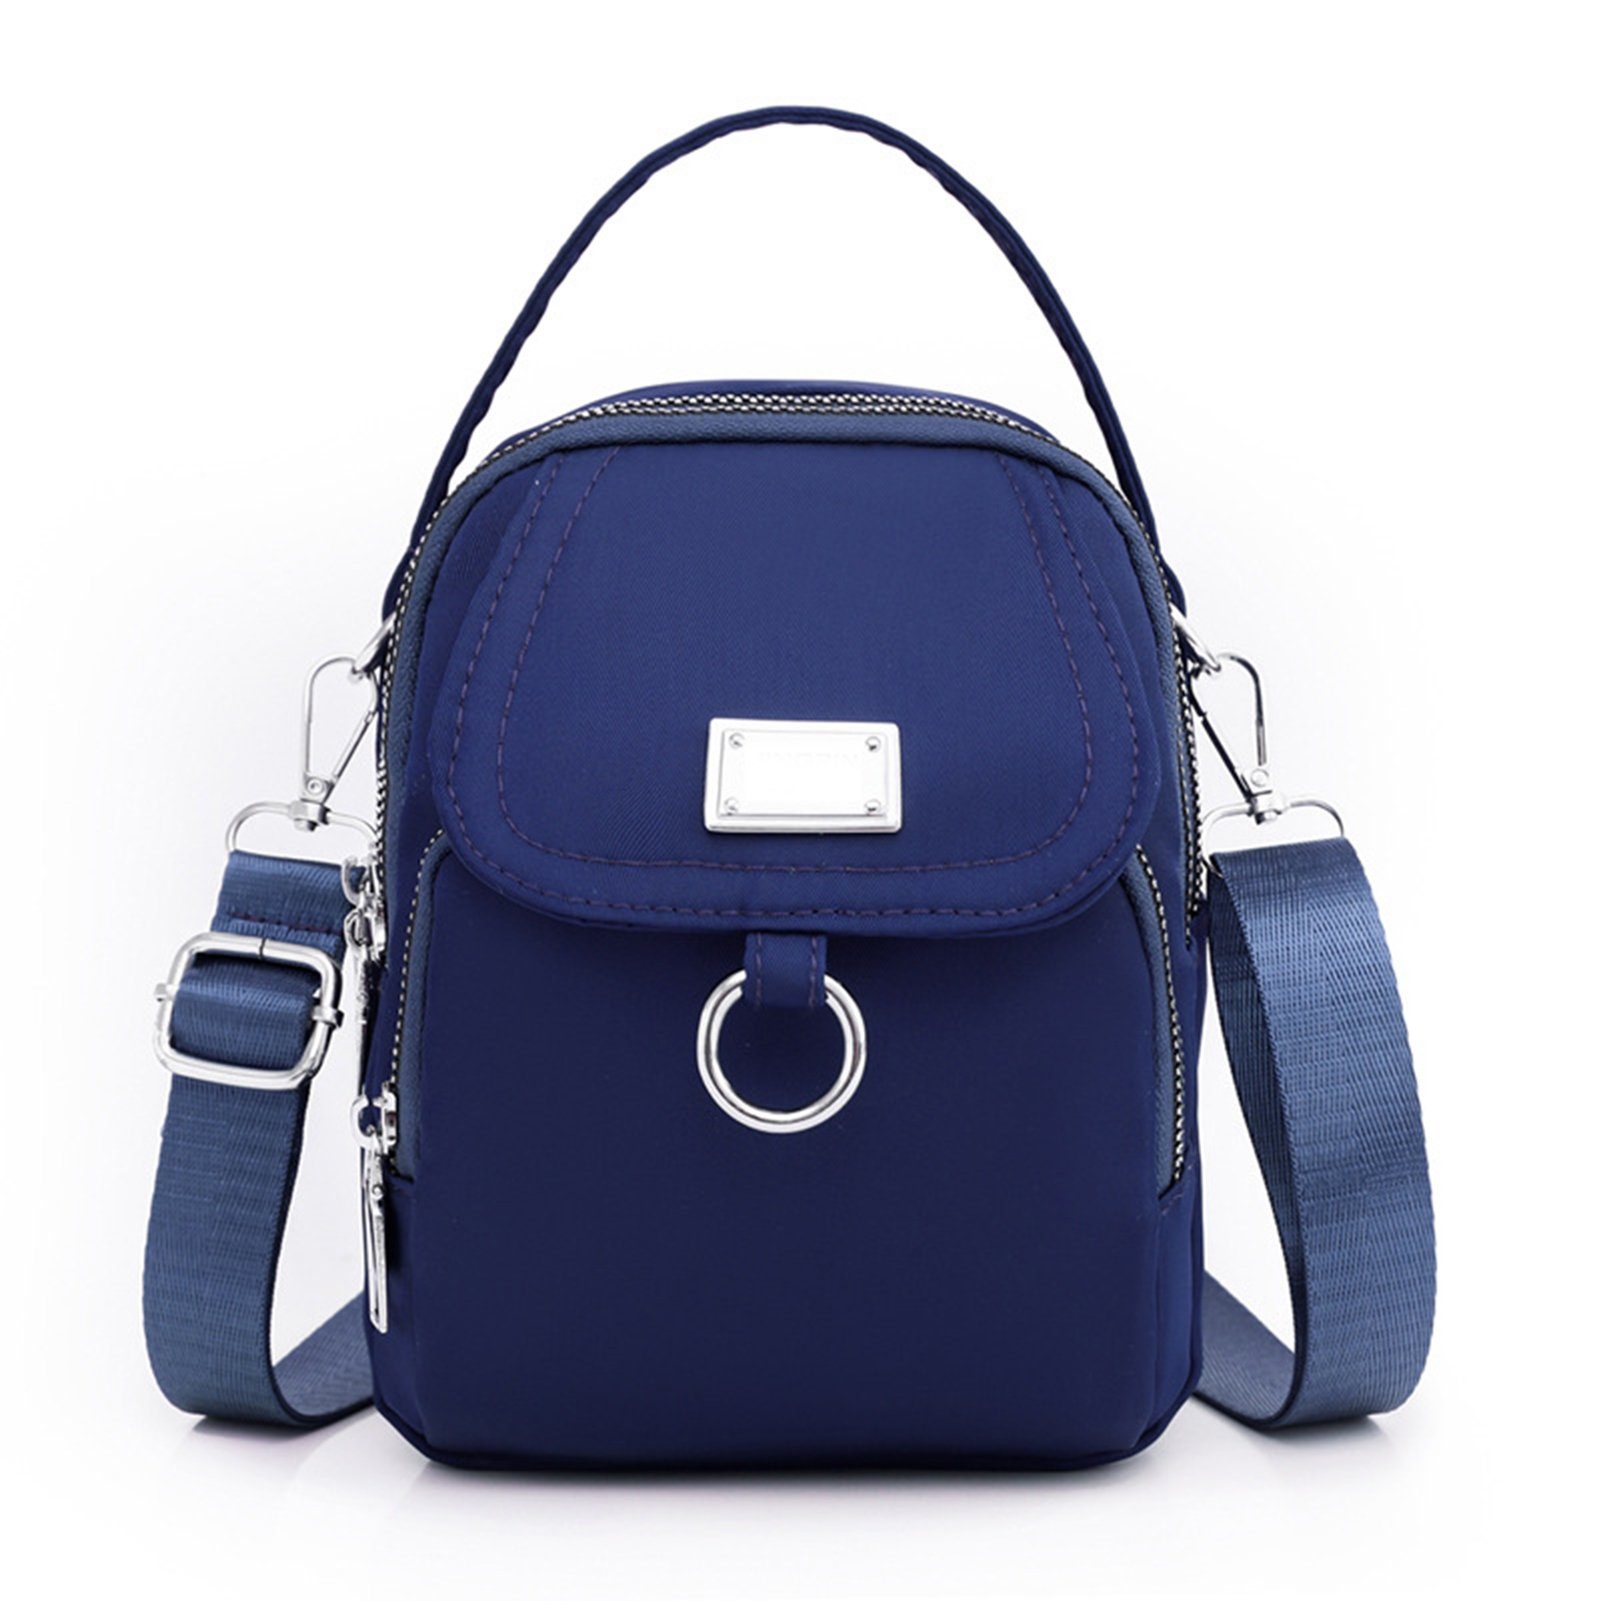 Bag Blusmart Crossbody sapphire Umhängetasche Reißverschluss-Schultertasche, Damen-Umhängetasche, blue